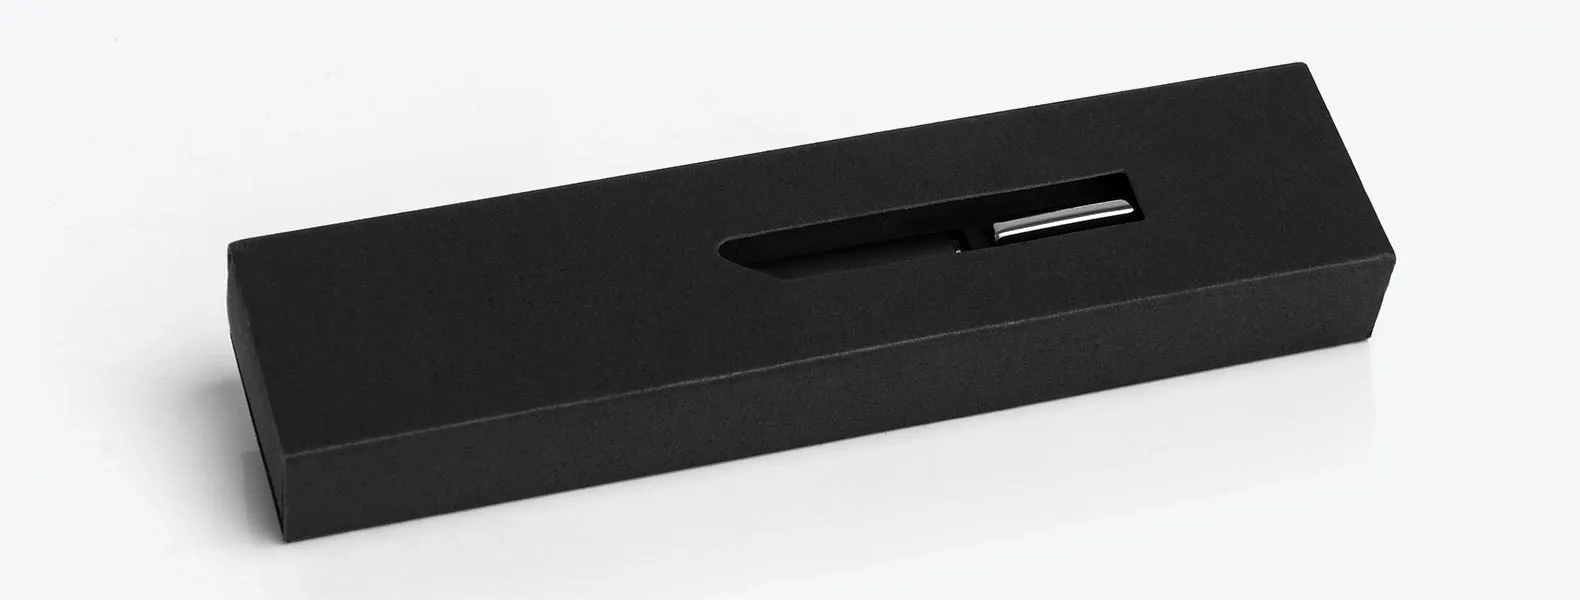 Caneta esferográfica em metal preta. Conta com carga esferográfica azul acionada por um giro no corpo da caneta; clip cromado; caixa para presente.